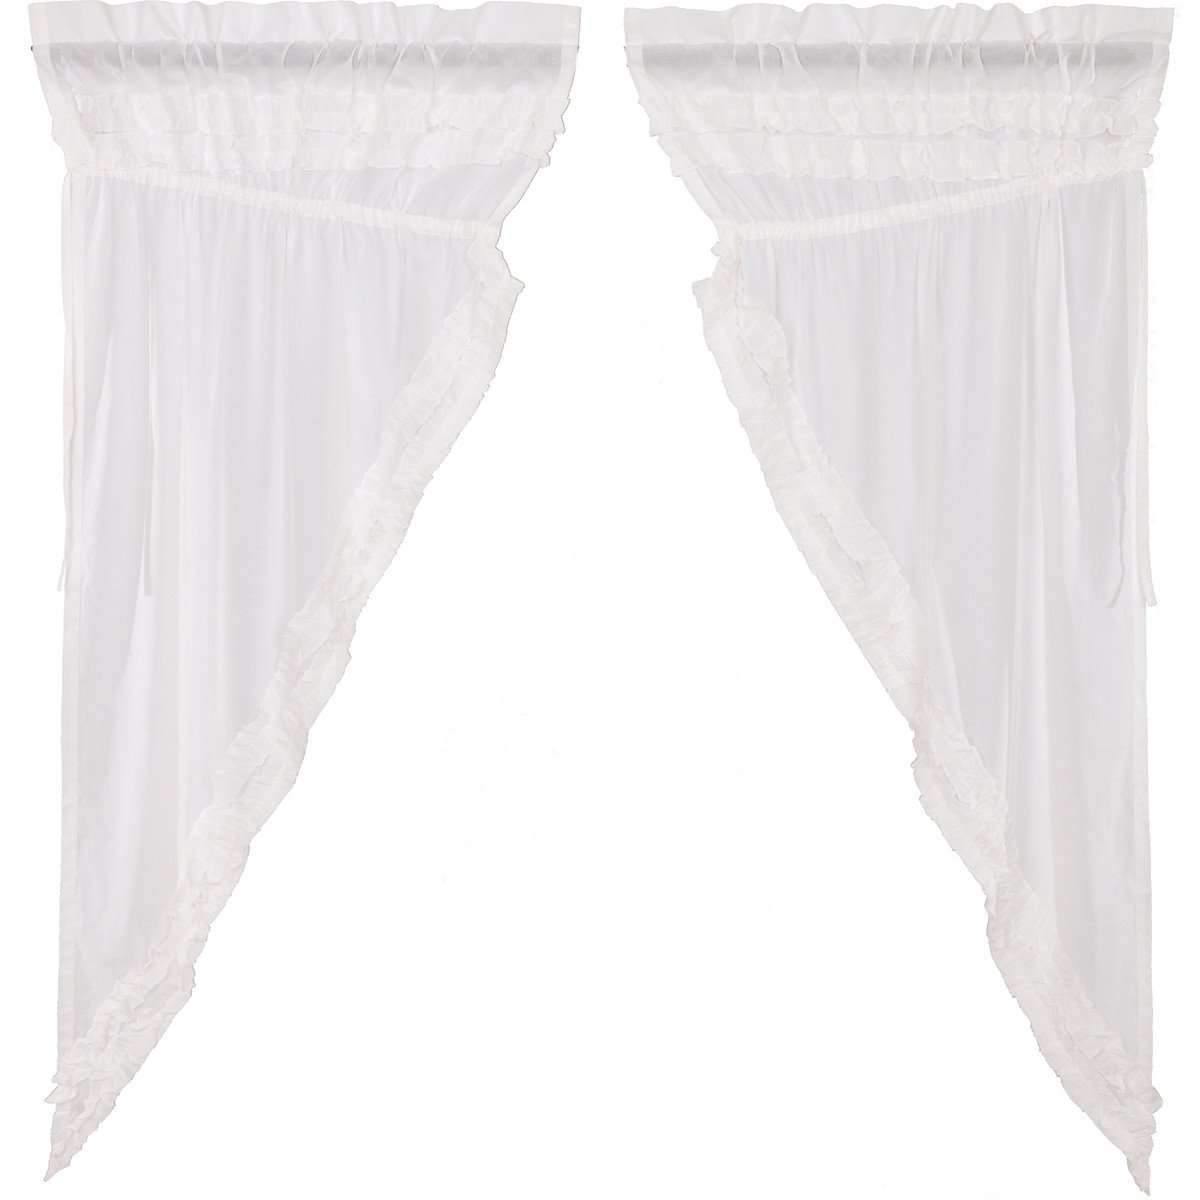 White Ruffled Sheer Petticoat Prairie Short Panel Curtain Set 63x36x18 VHC Brands online